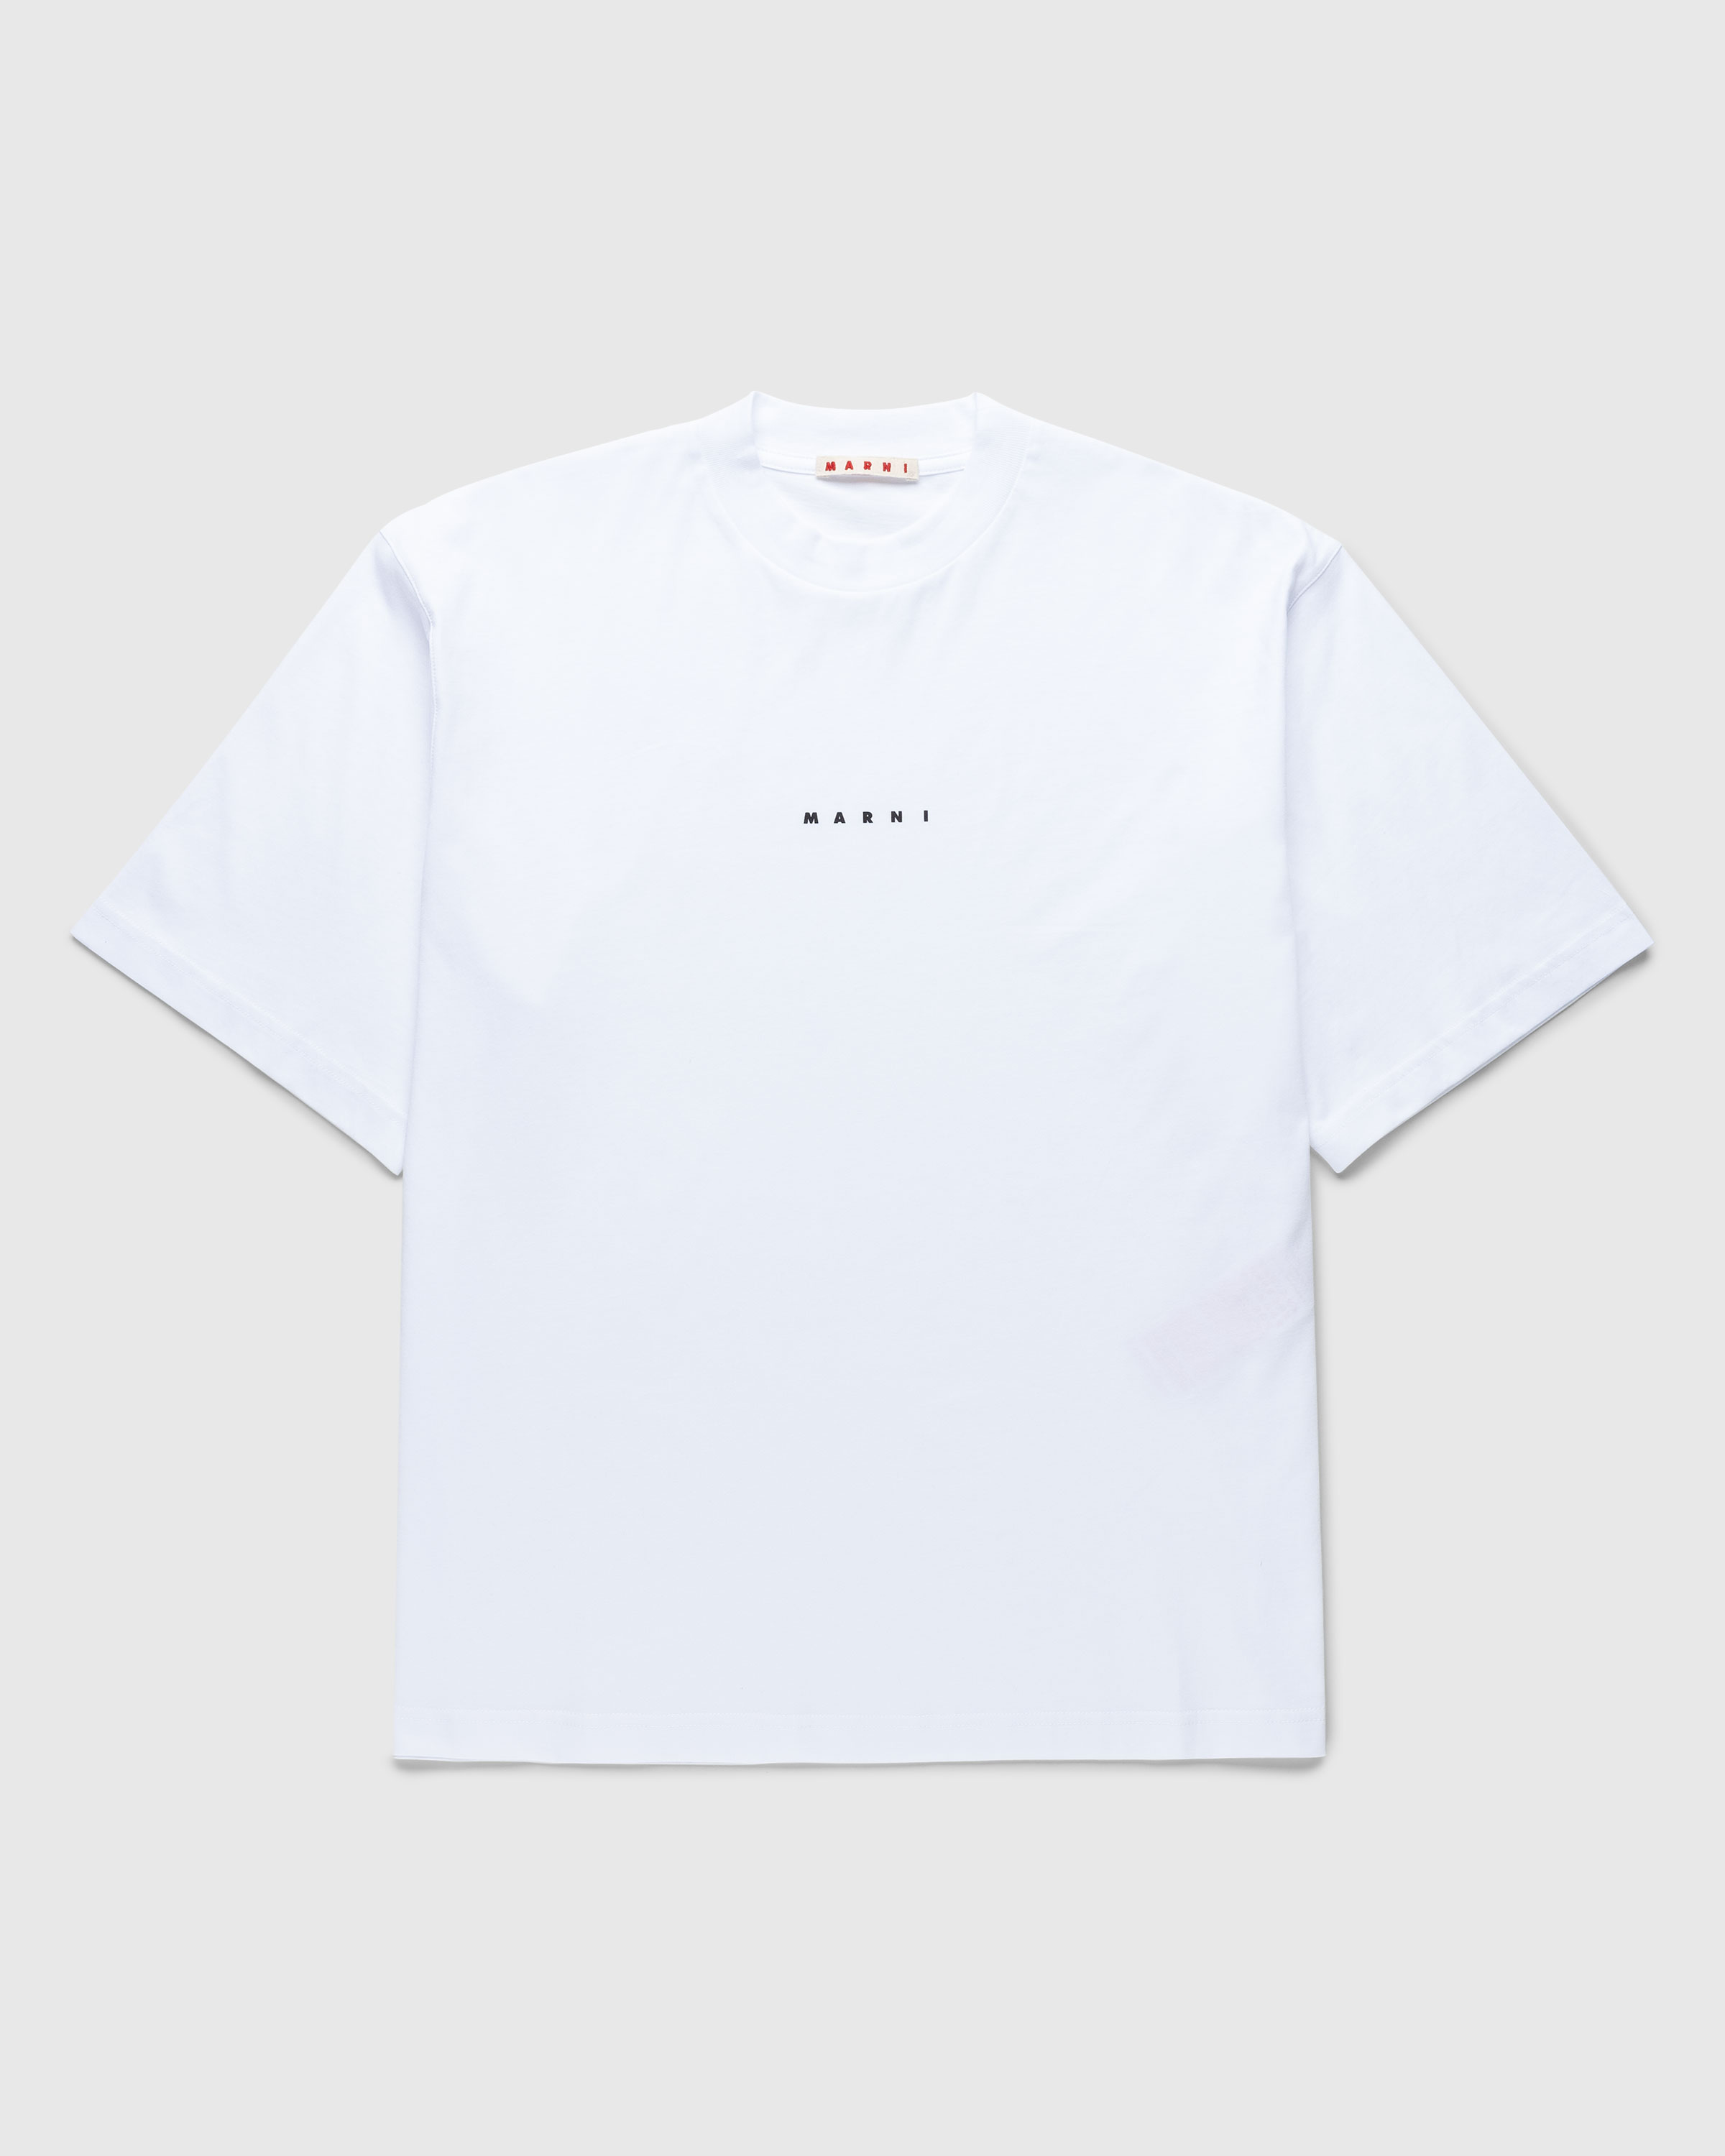 Marni – Logo T-Shirt White | Highsnobiety Shop